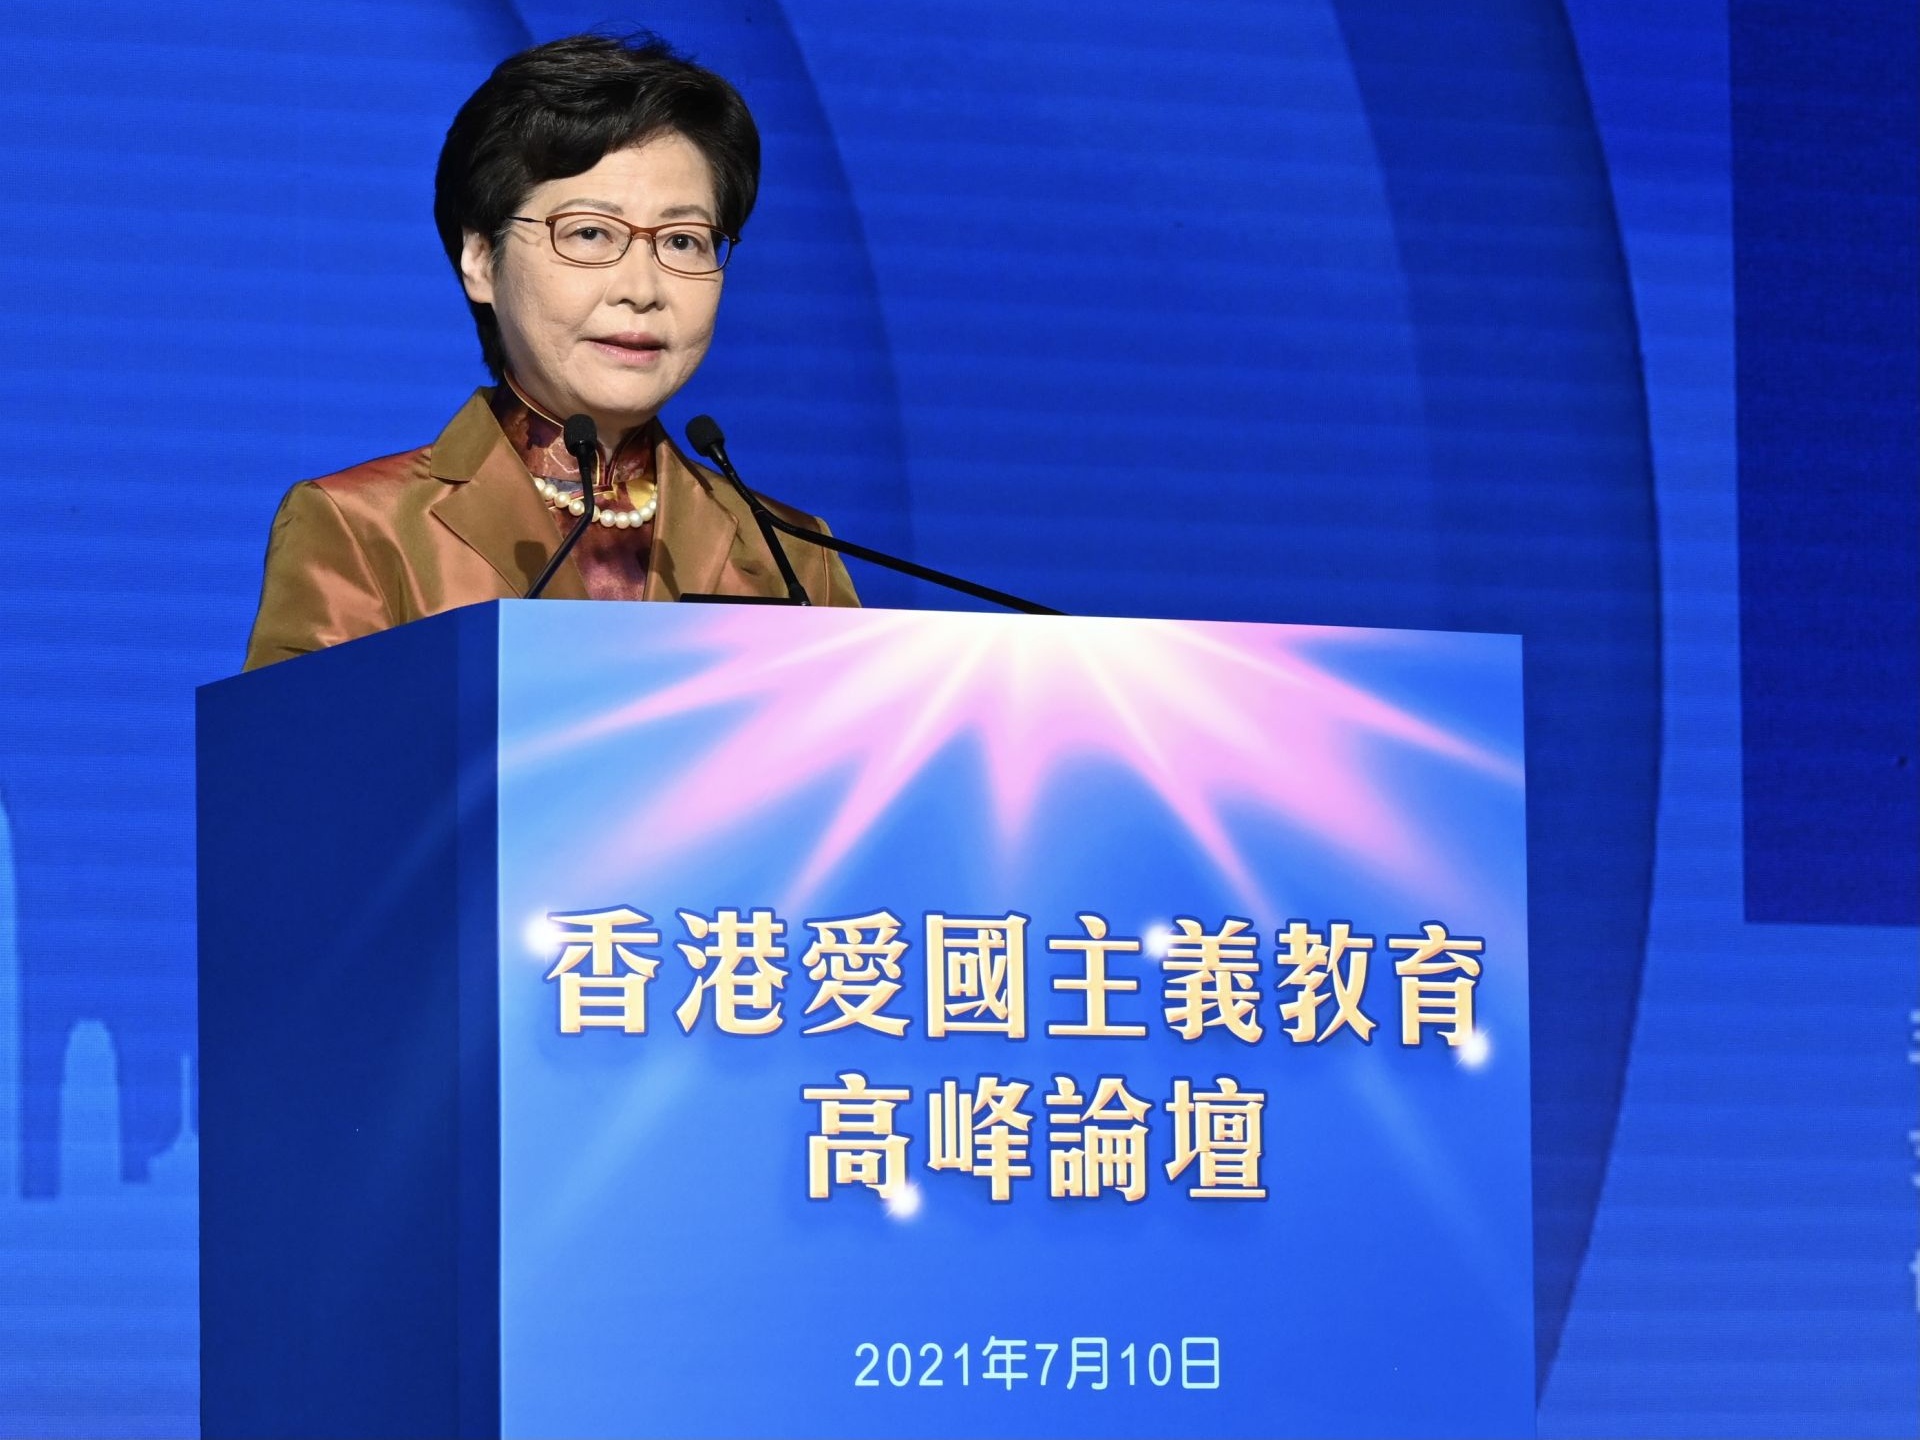 林郑月娥出席香港爱国主义教育峰会表示：推行爱国主义教育弘扬爱国主义精神的价值观